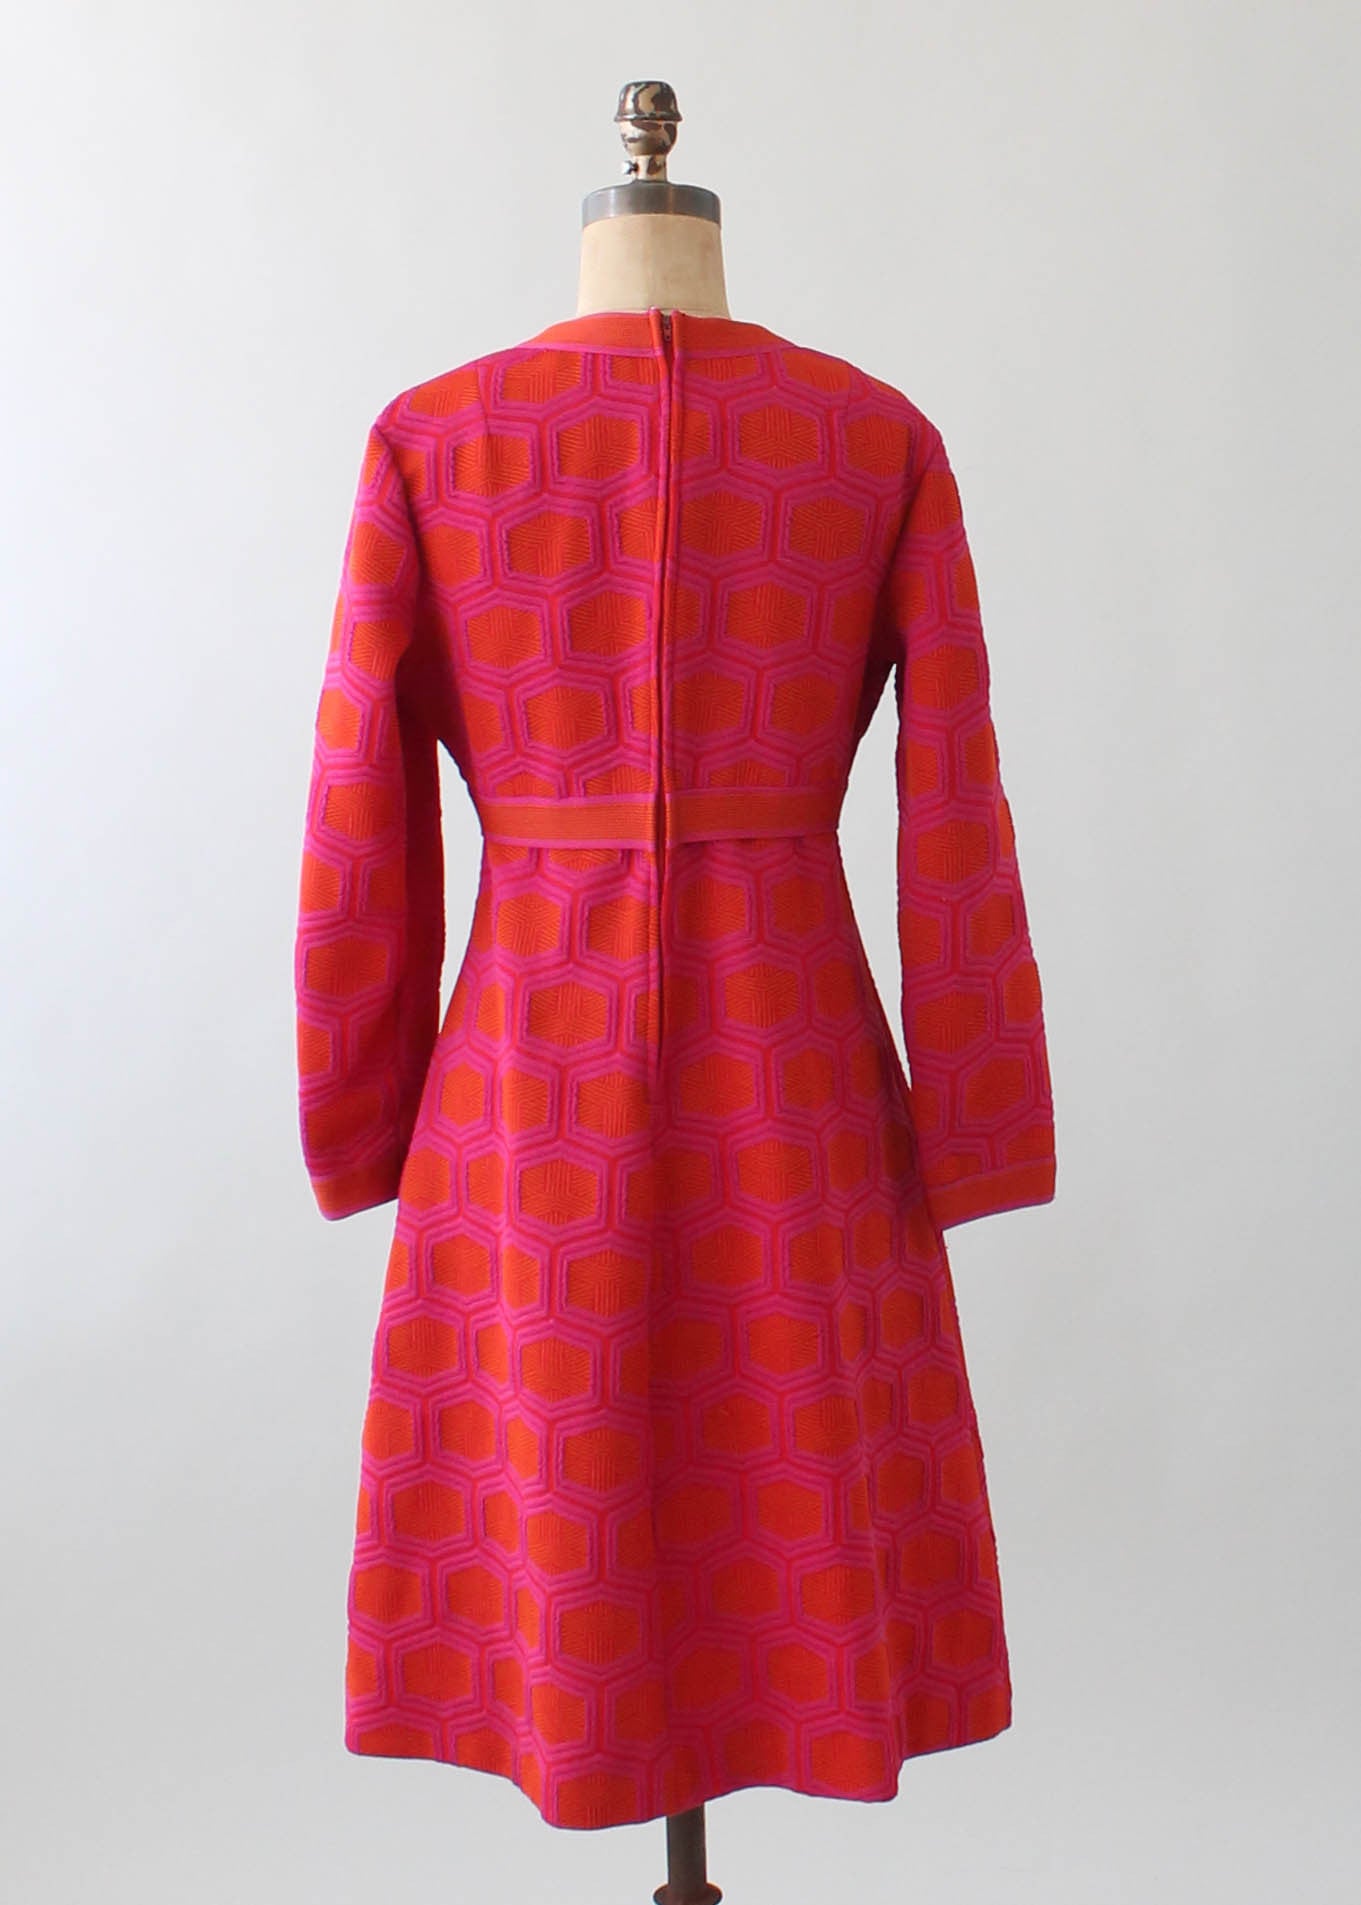 Vintage 1970s MOD Orange and Pink Knit Dress - Raleigh Vintage